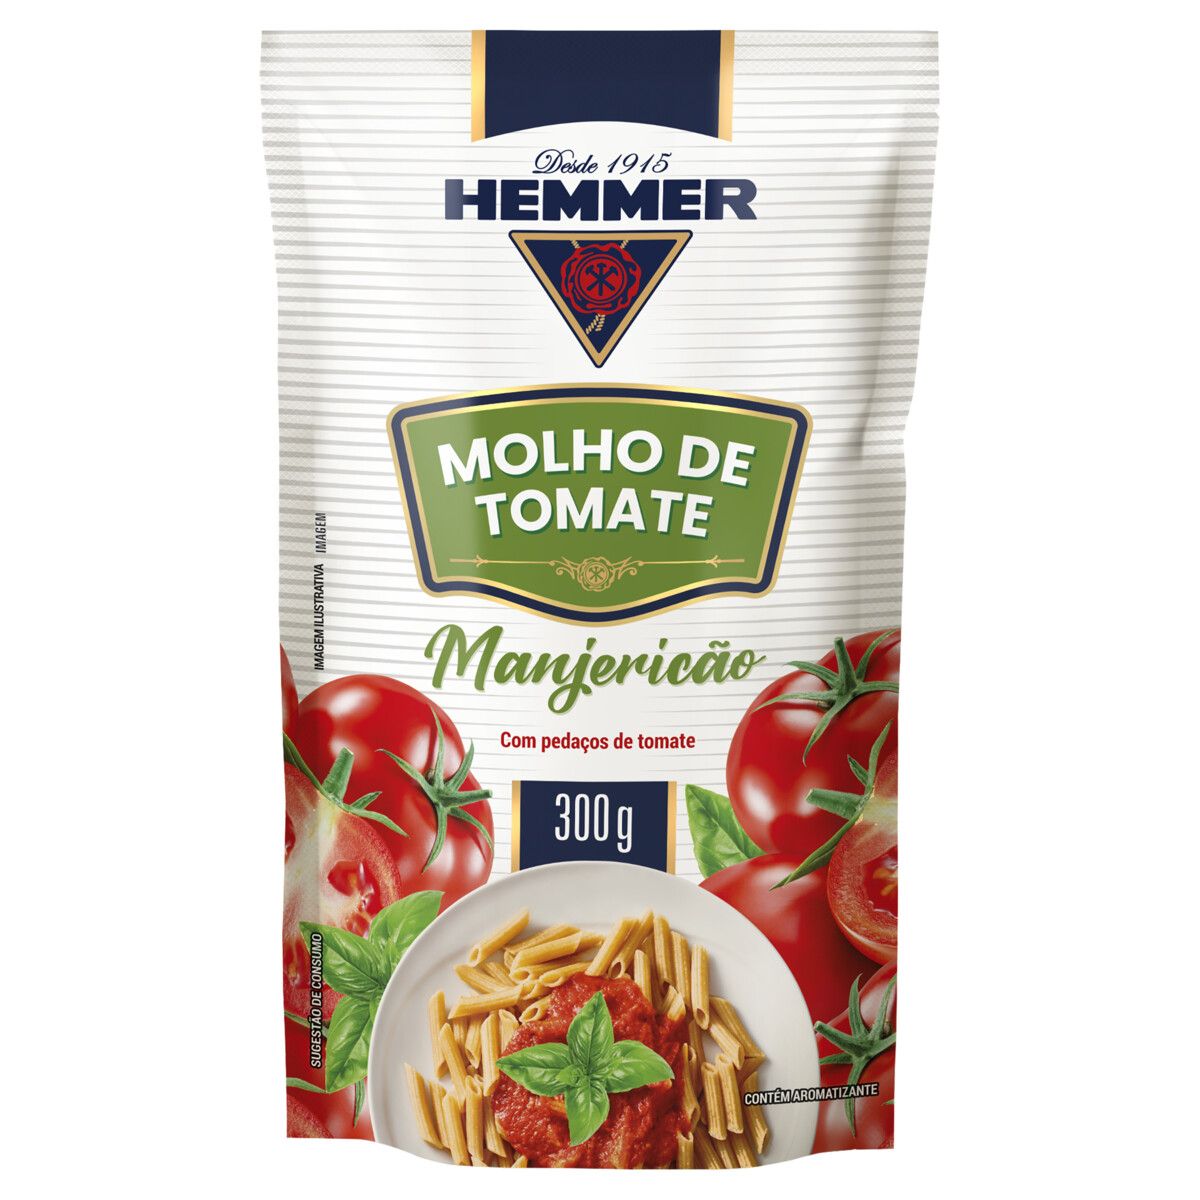 Molho de Tomate Hemmer Manjericão Sachê 300g